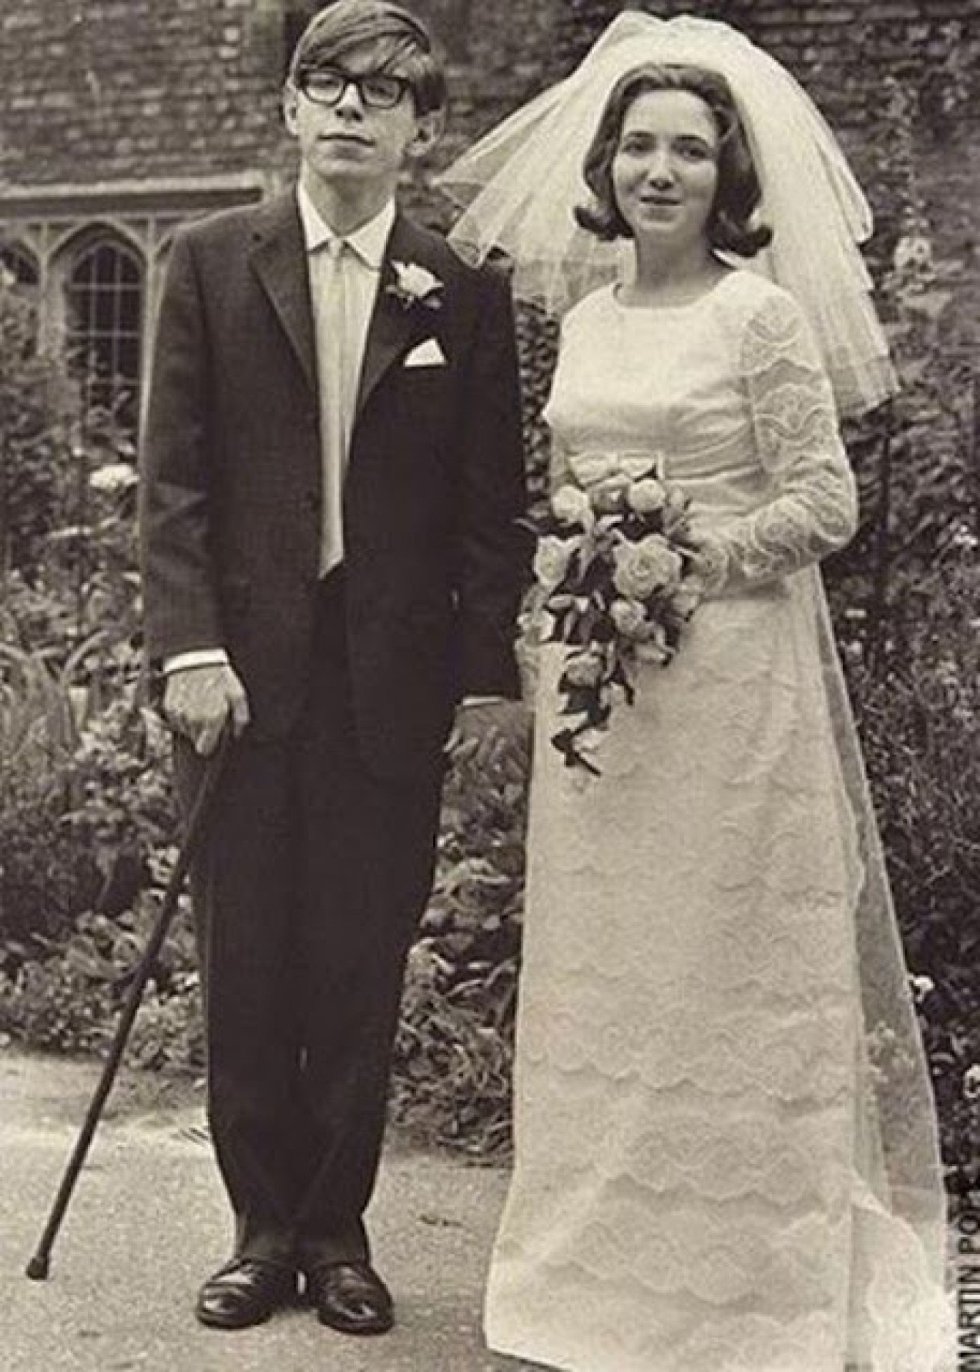 Casamento de Stephen e Jane Hawking em 1965.